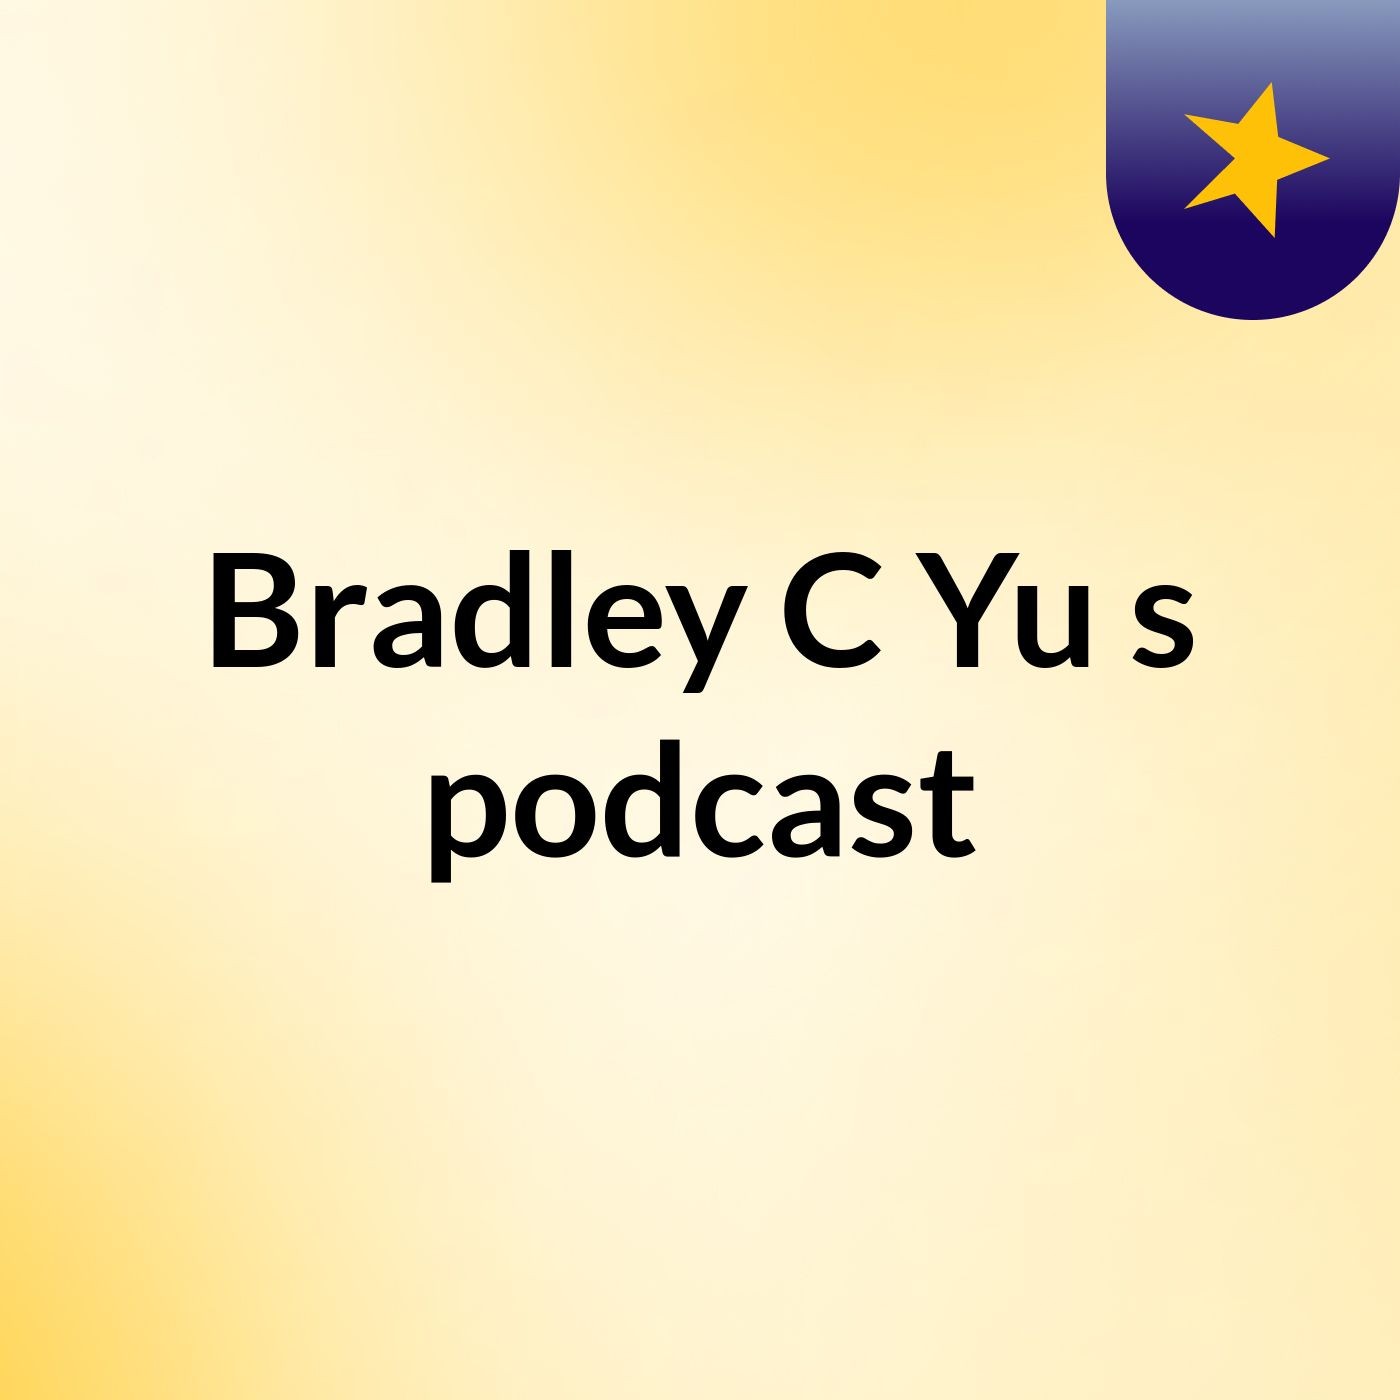 Bradley C Yu's podcast